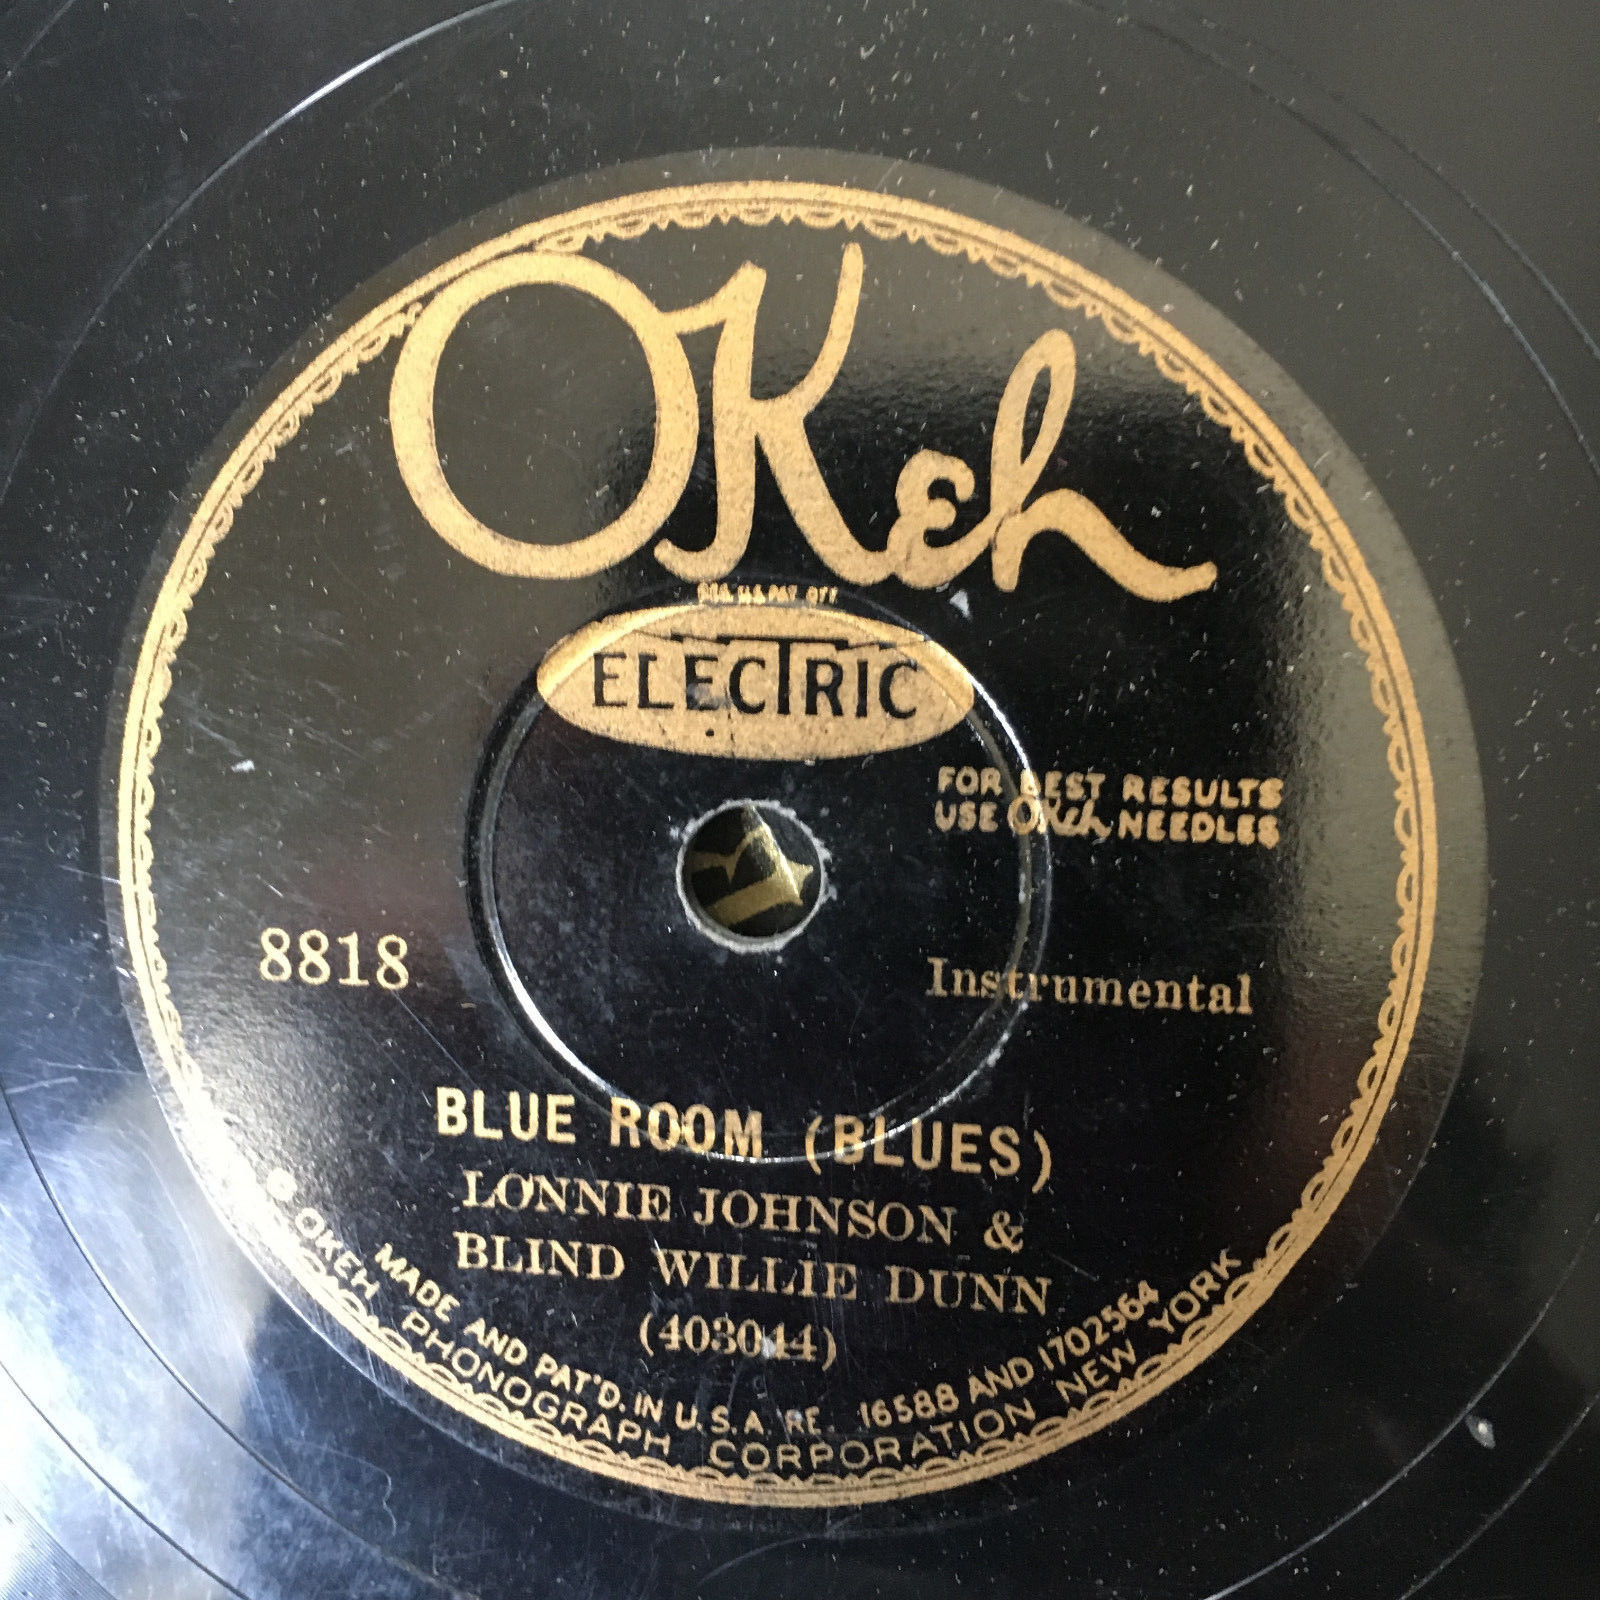 Okeh 8818 Lonnie Johnson & BLIND WILLIE DUNN  78 rpm HOT GUITAR duets 1930